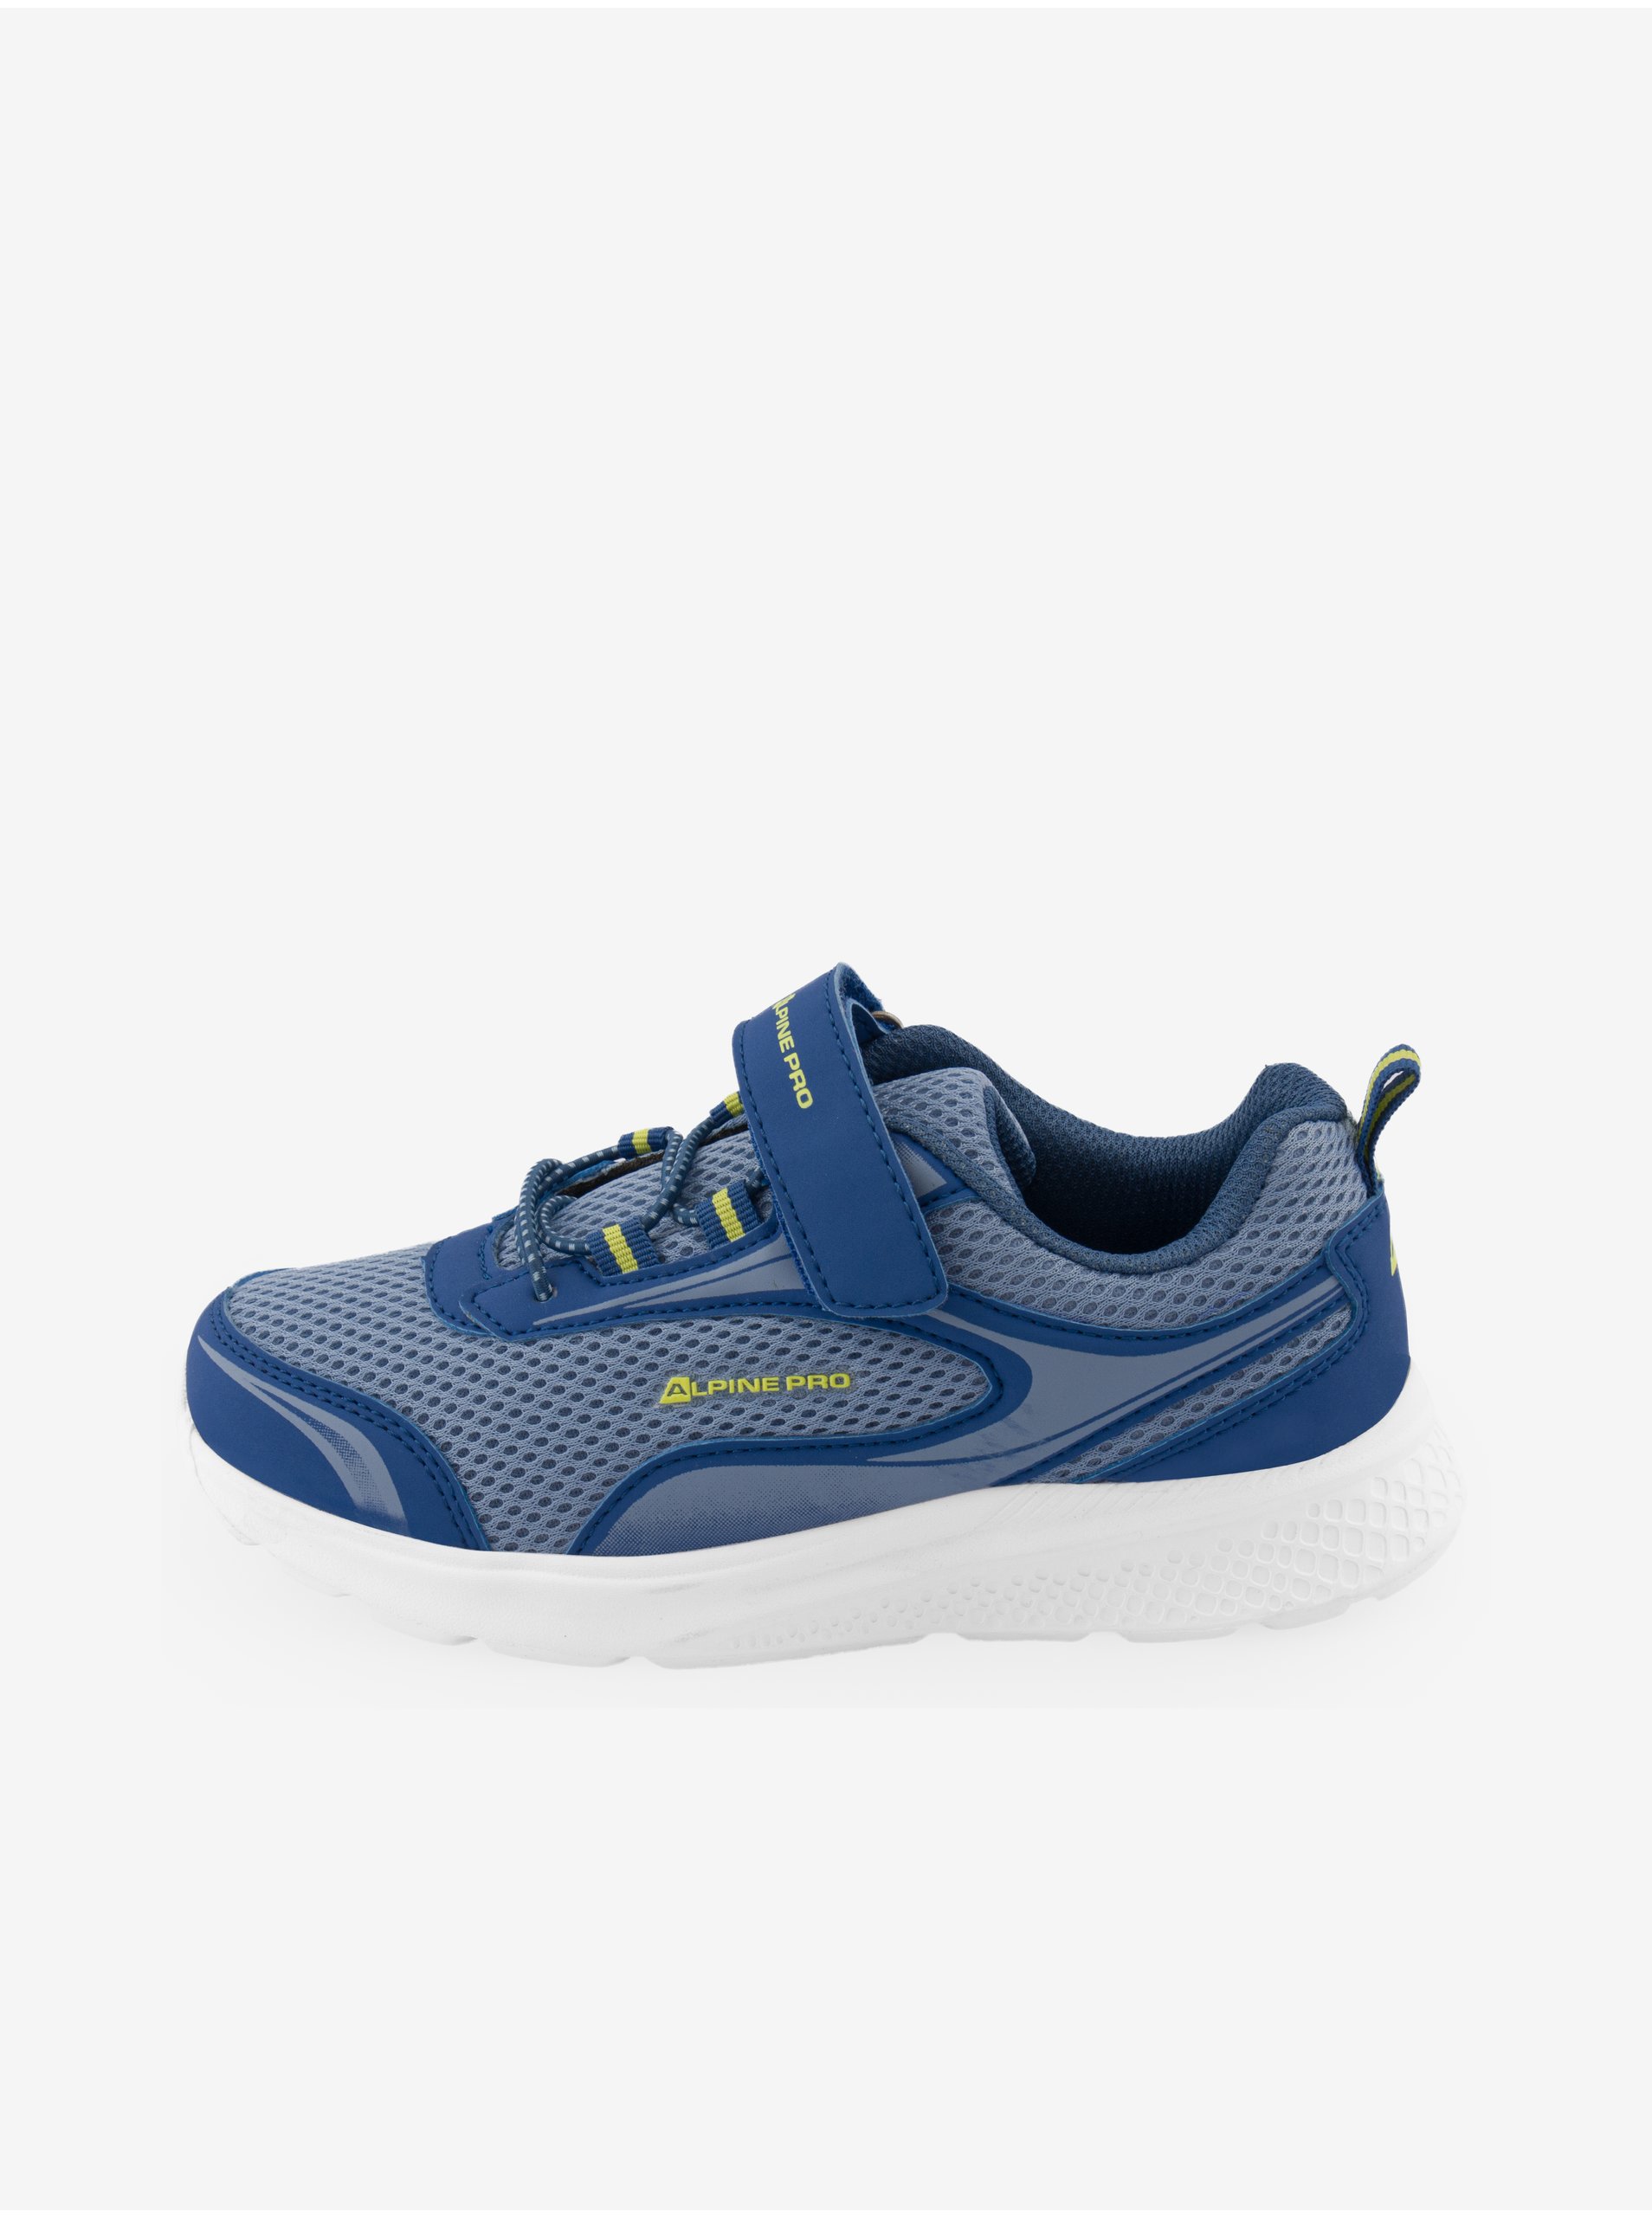 E-shop Tmavě modré dětské boty ALPINE PRO Lenie